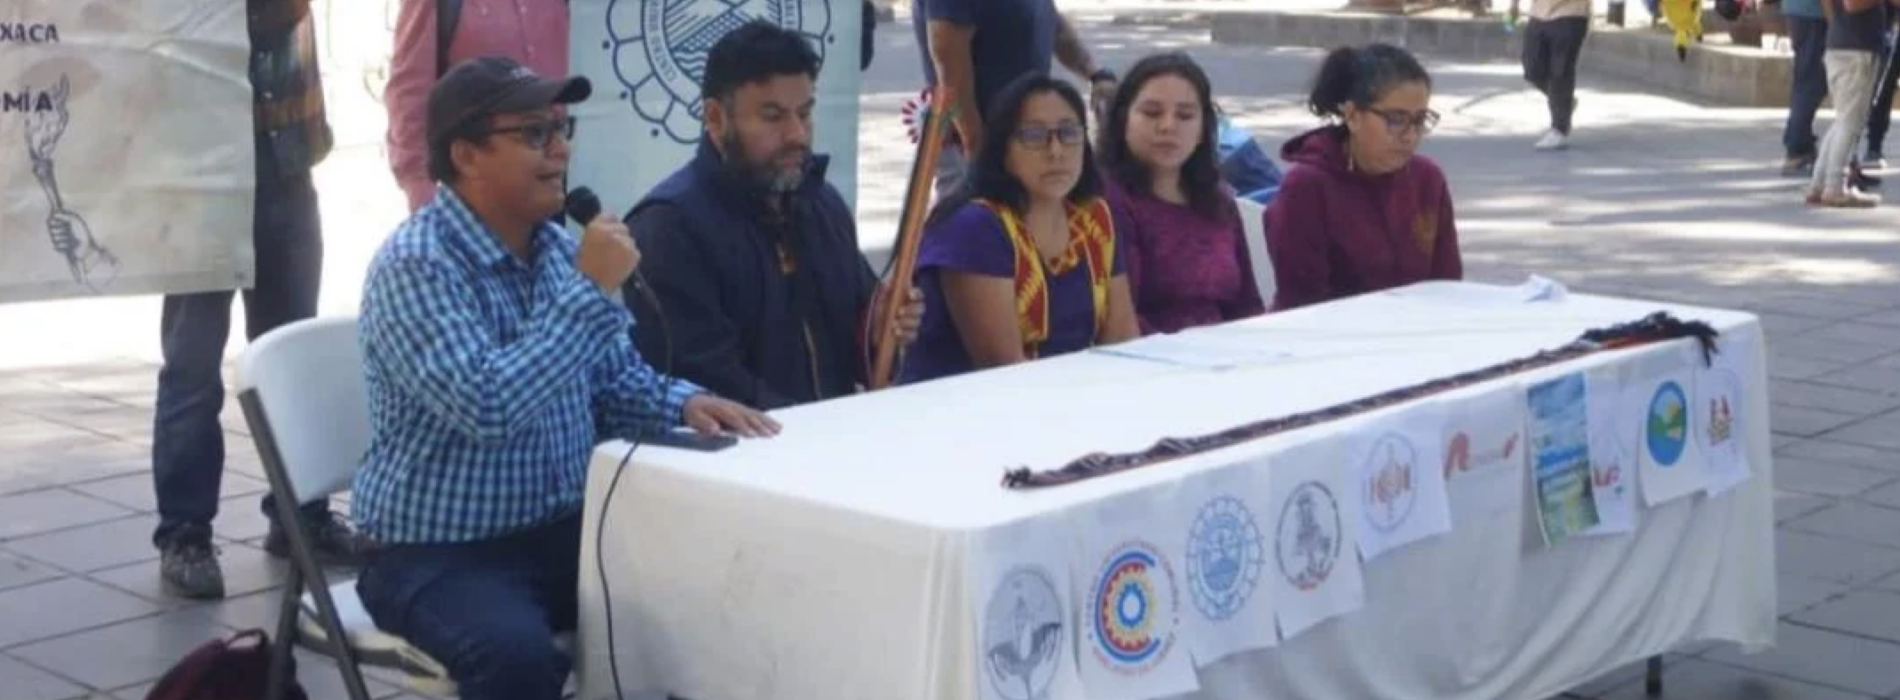 Universidad Autónoma Comunal de Oaxaca acusa a Jara de buscar controlar la institución